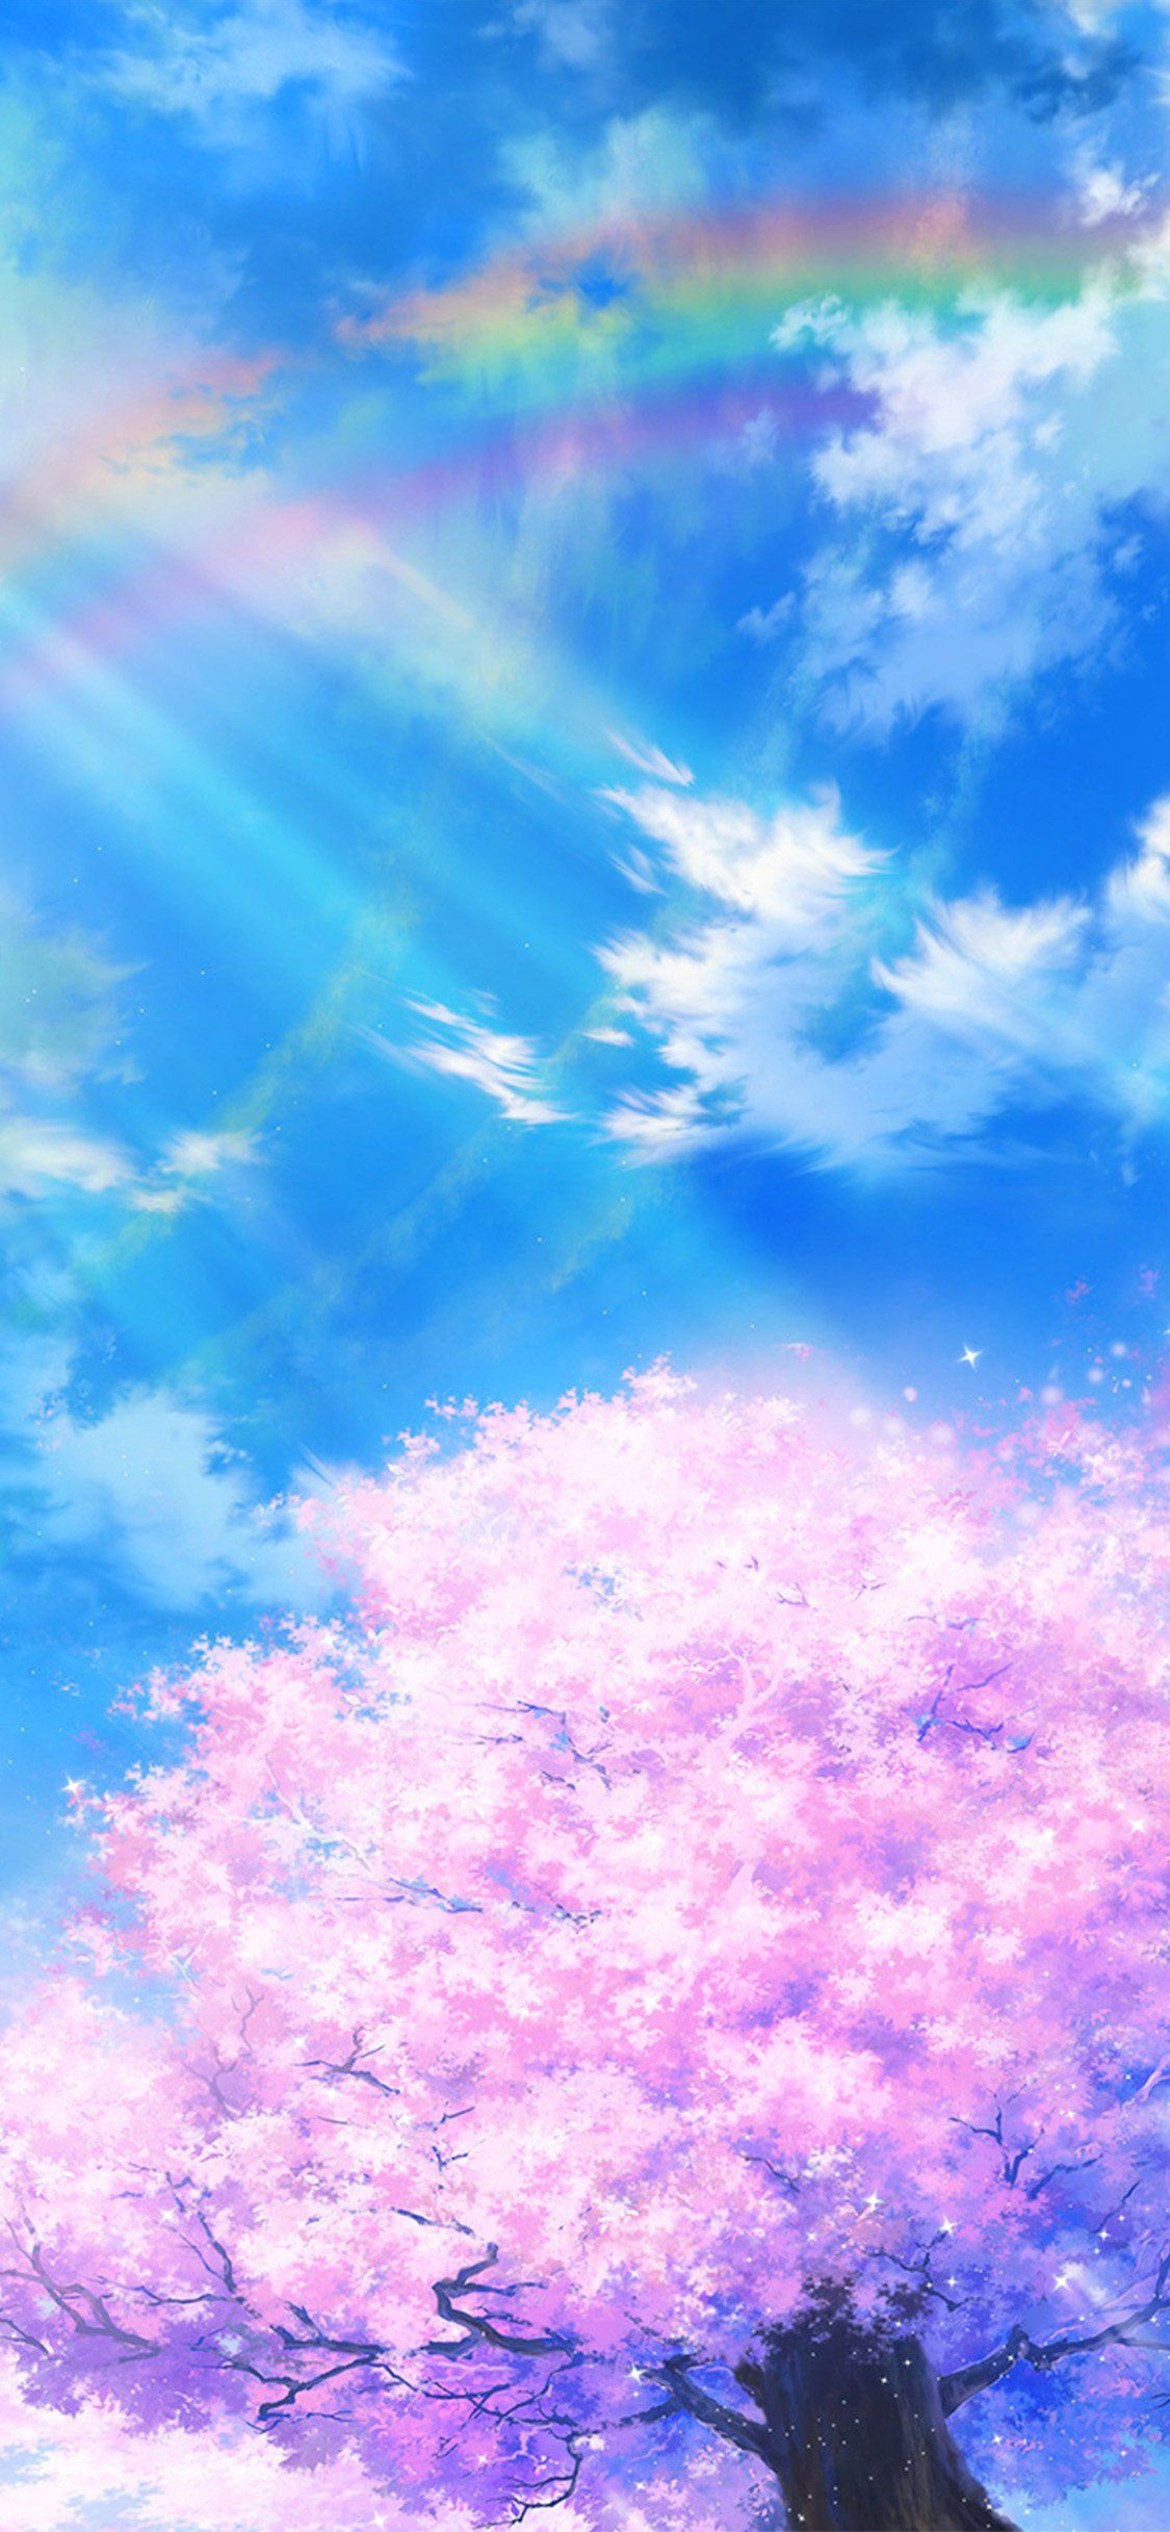 水色の綺麗な空と虹と桜のイラスト Iphone 12 Pro スマホ壁紙 待ち受け スマラン